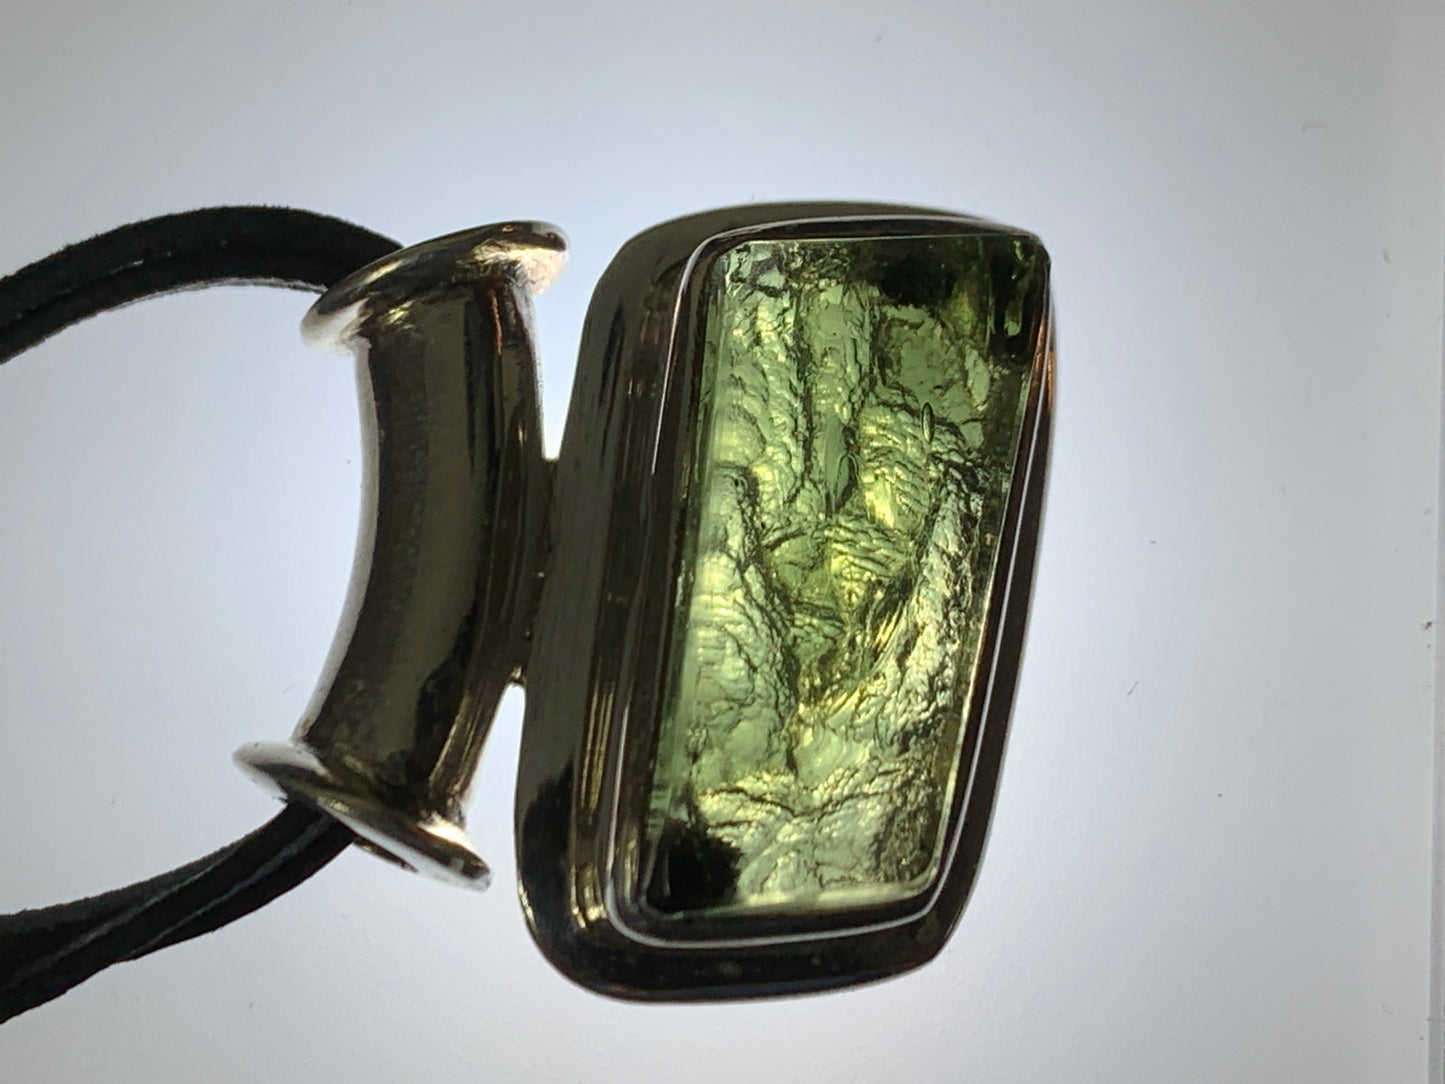 Free Form Moldavite pendant with tube bail ( polished Moldavite )